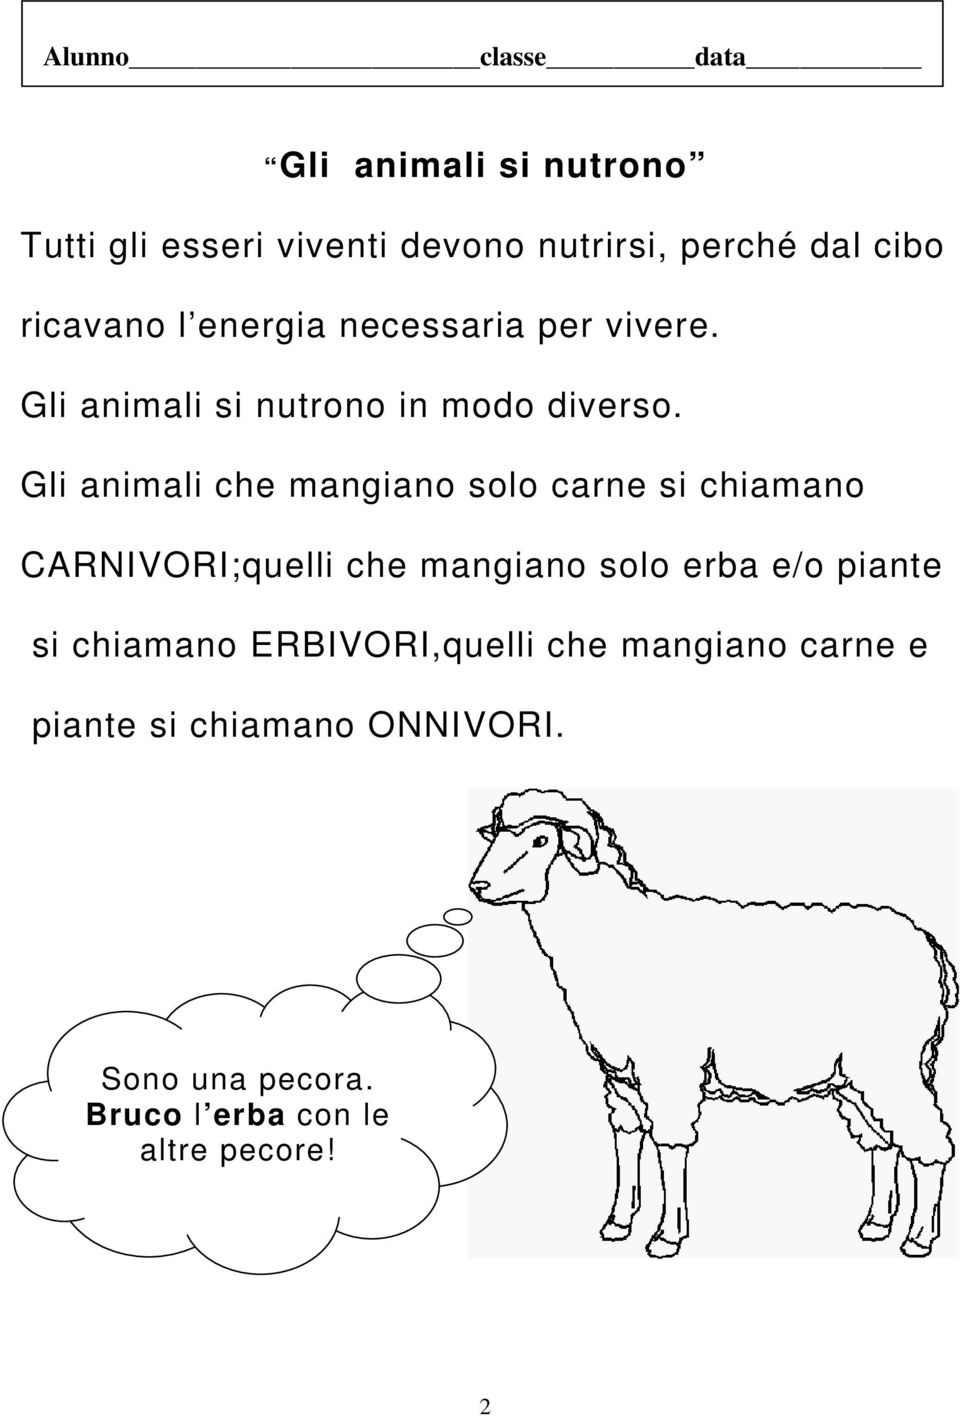 Gli animali che mangiano solo carne si chiamano CARNIVORI;quelli che mangiano solo erba e/o piante si